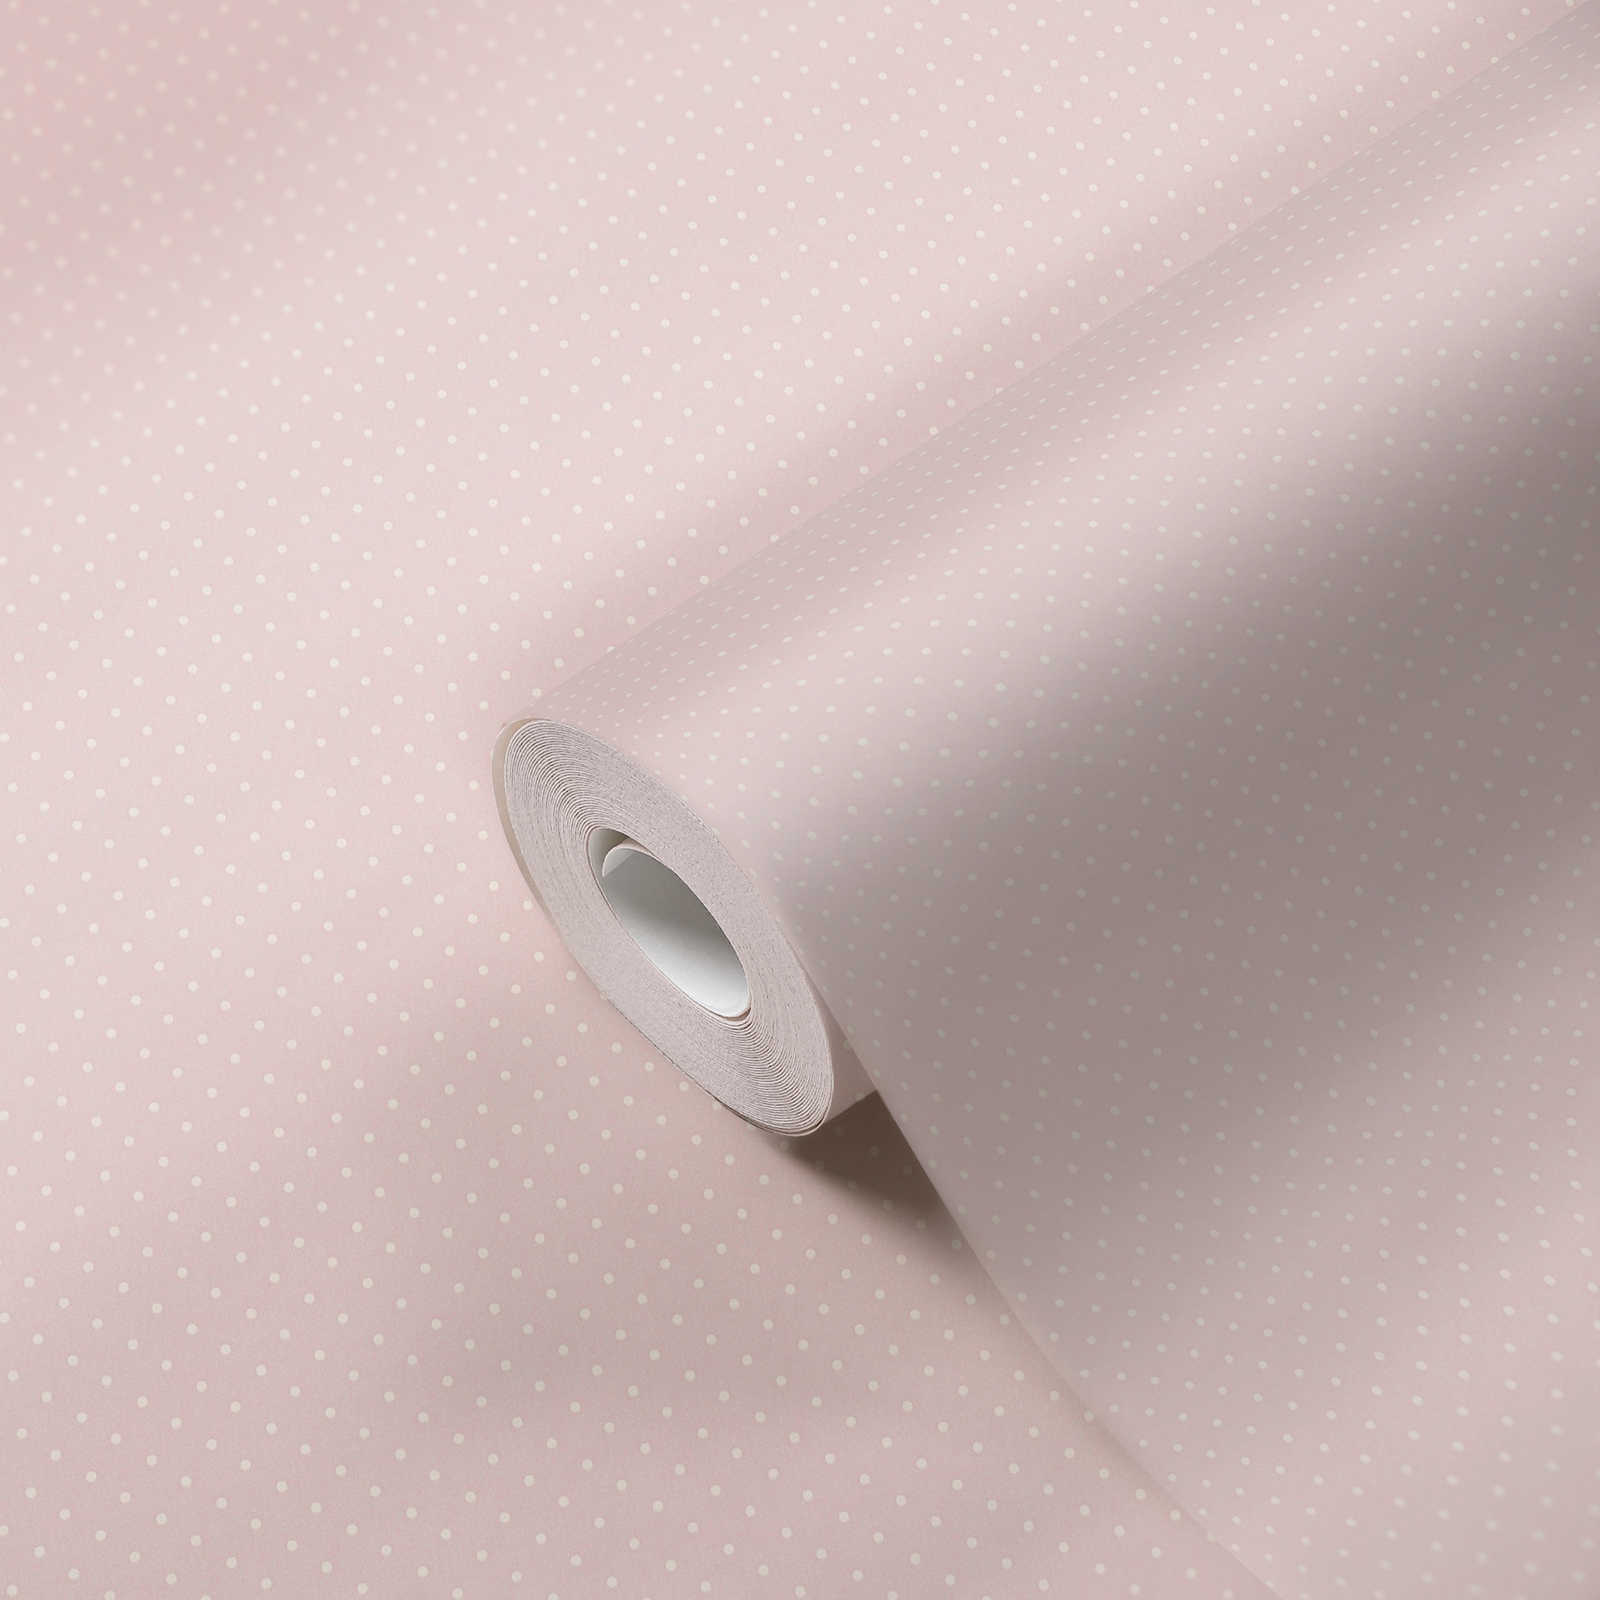             Papier peint style campagne à petits pois - rose, blanc
        